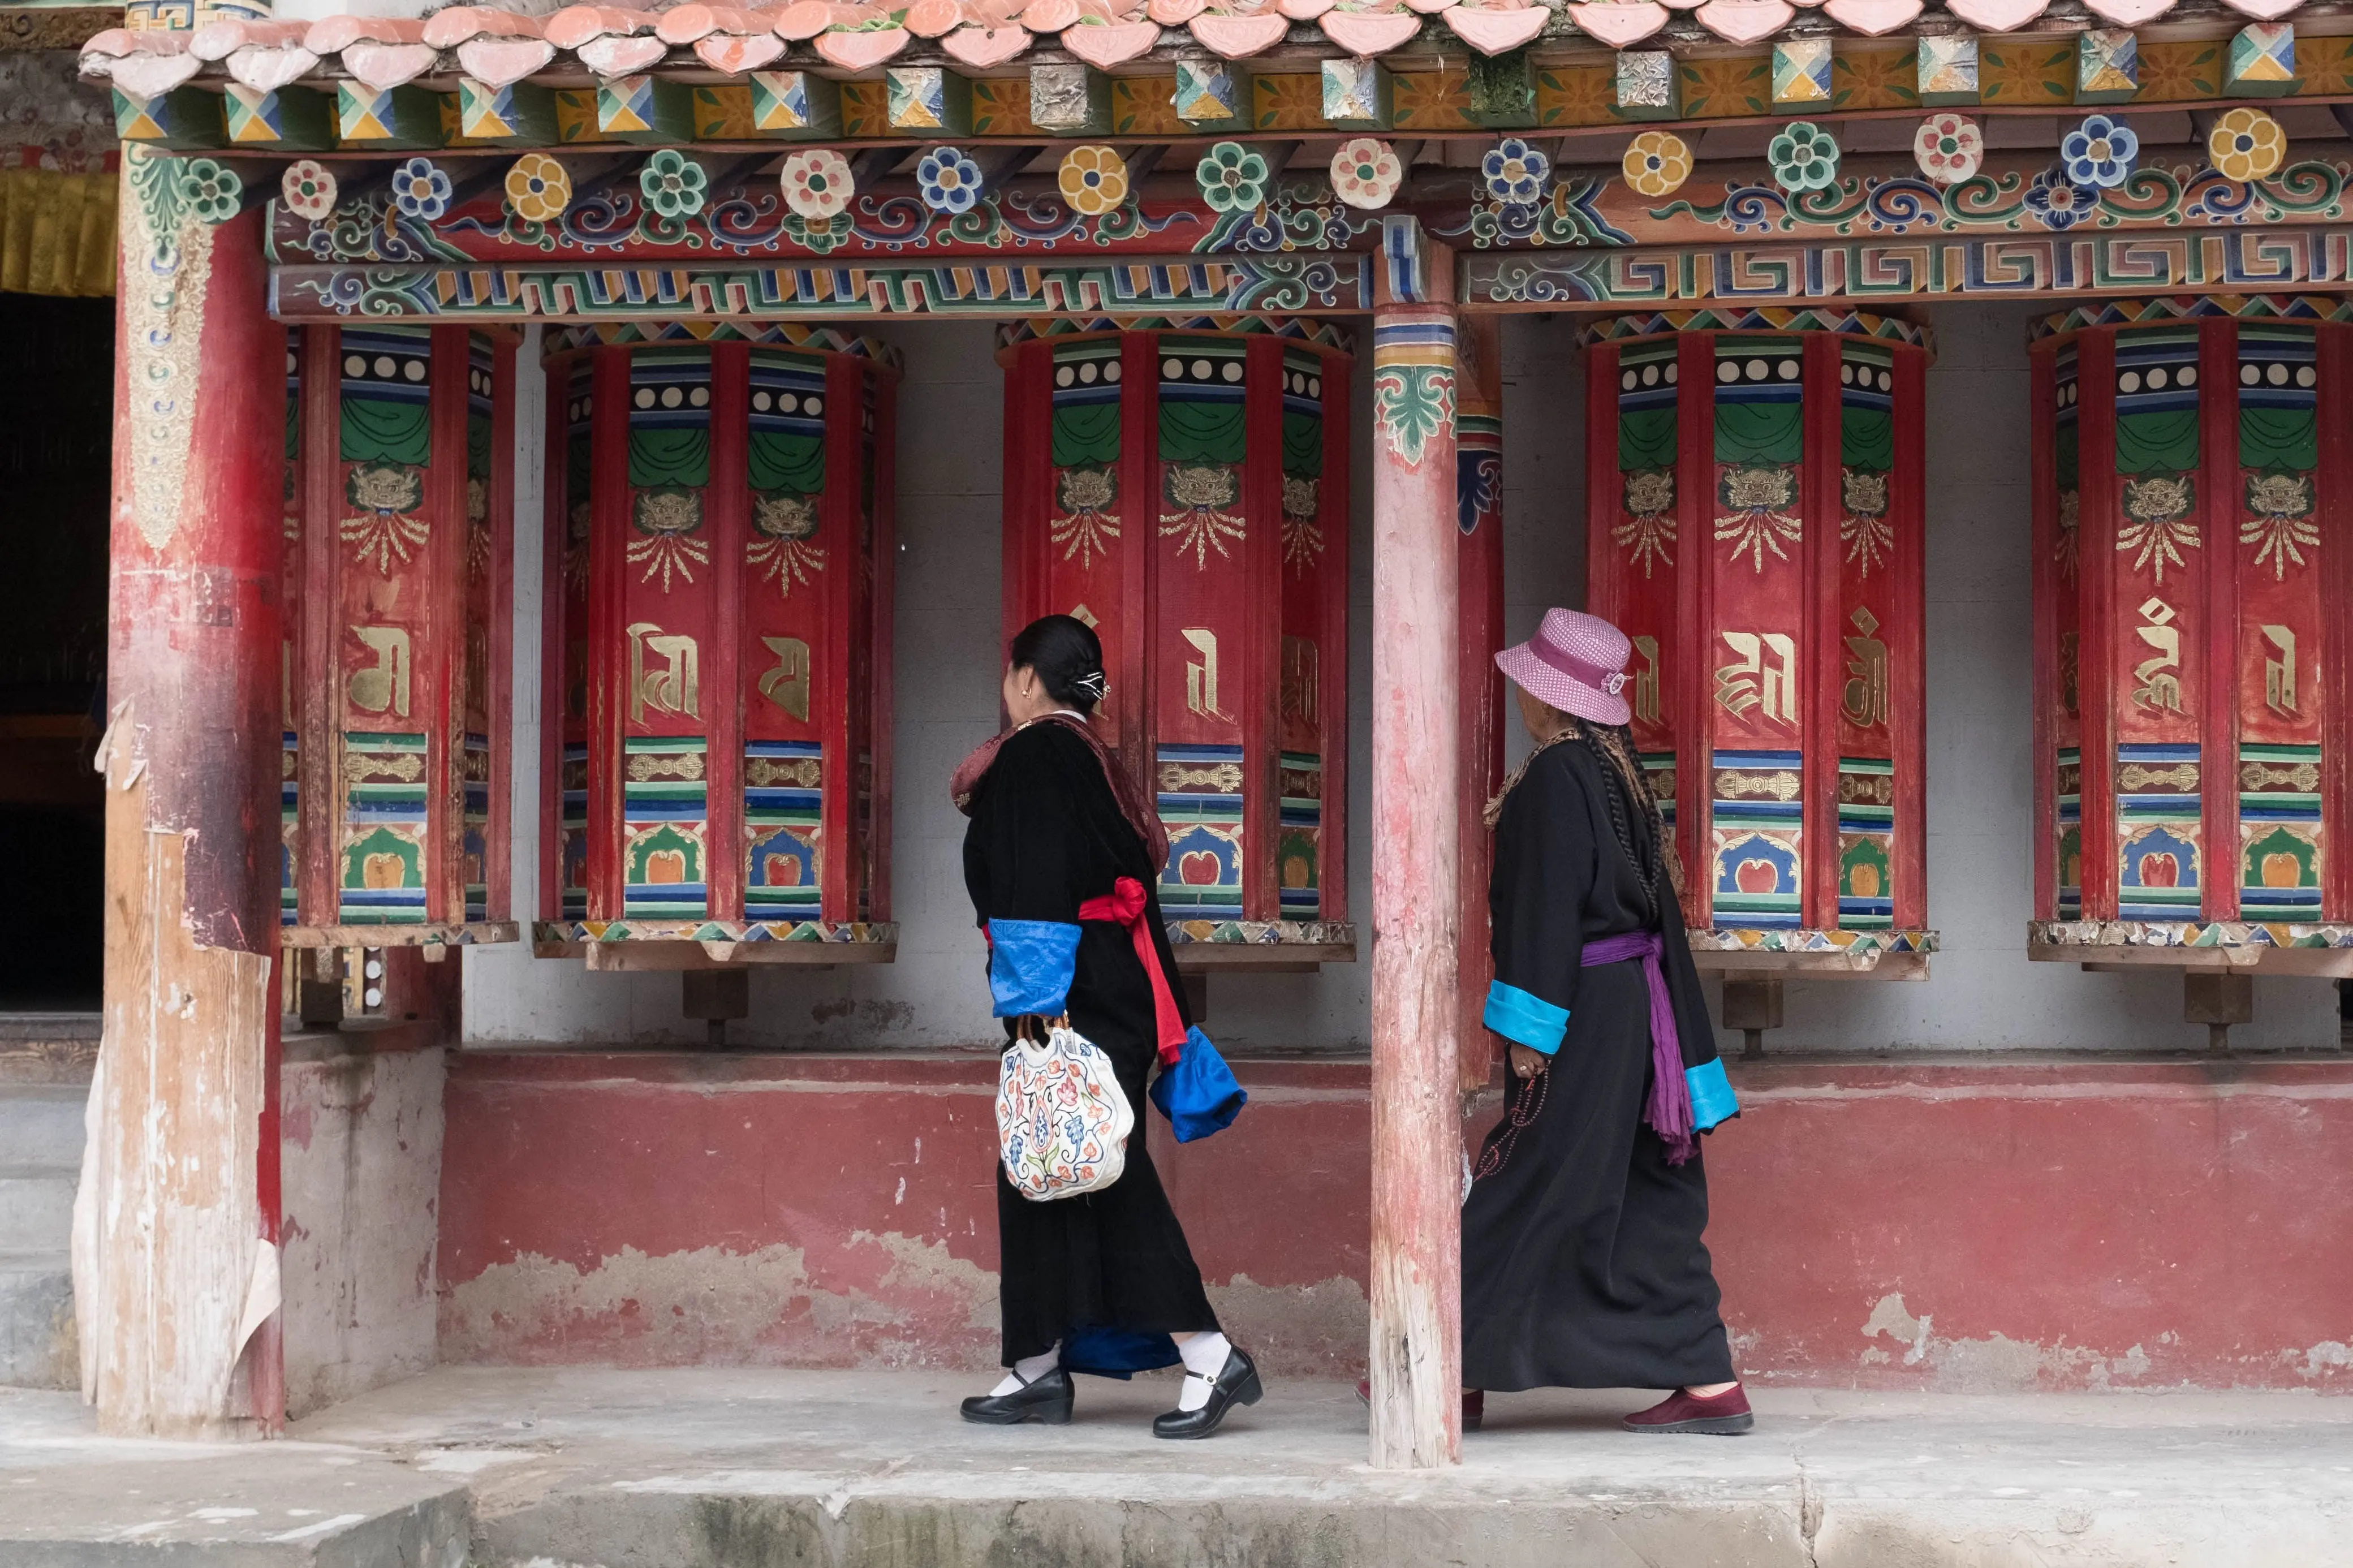 Visiting a Tibetan Monastery